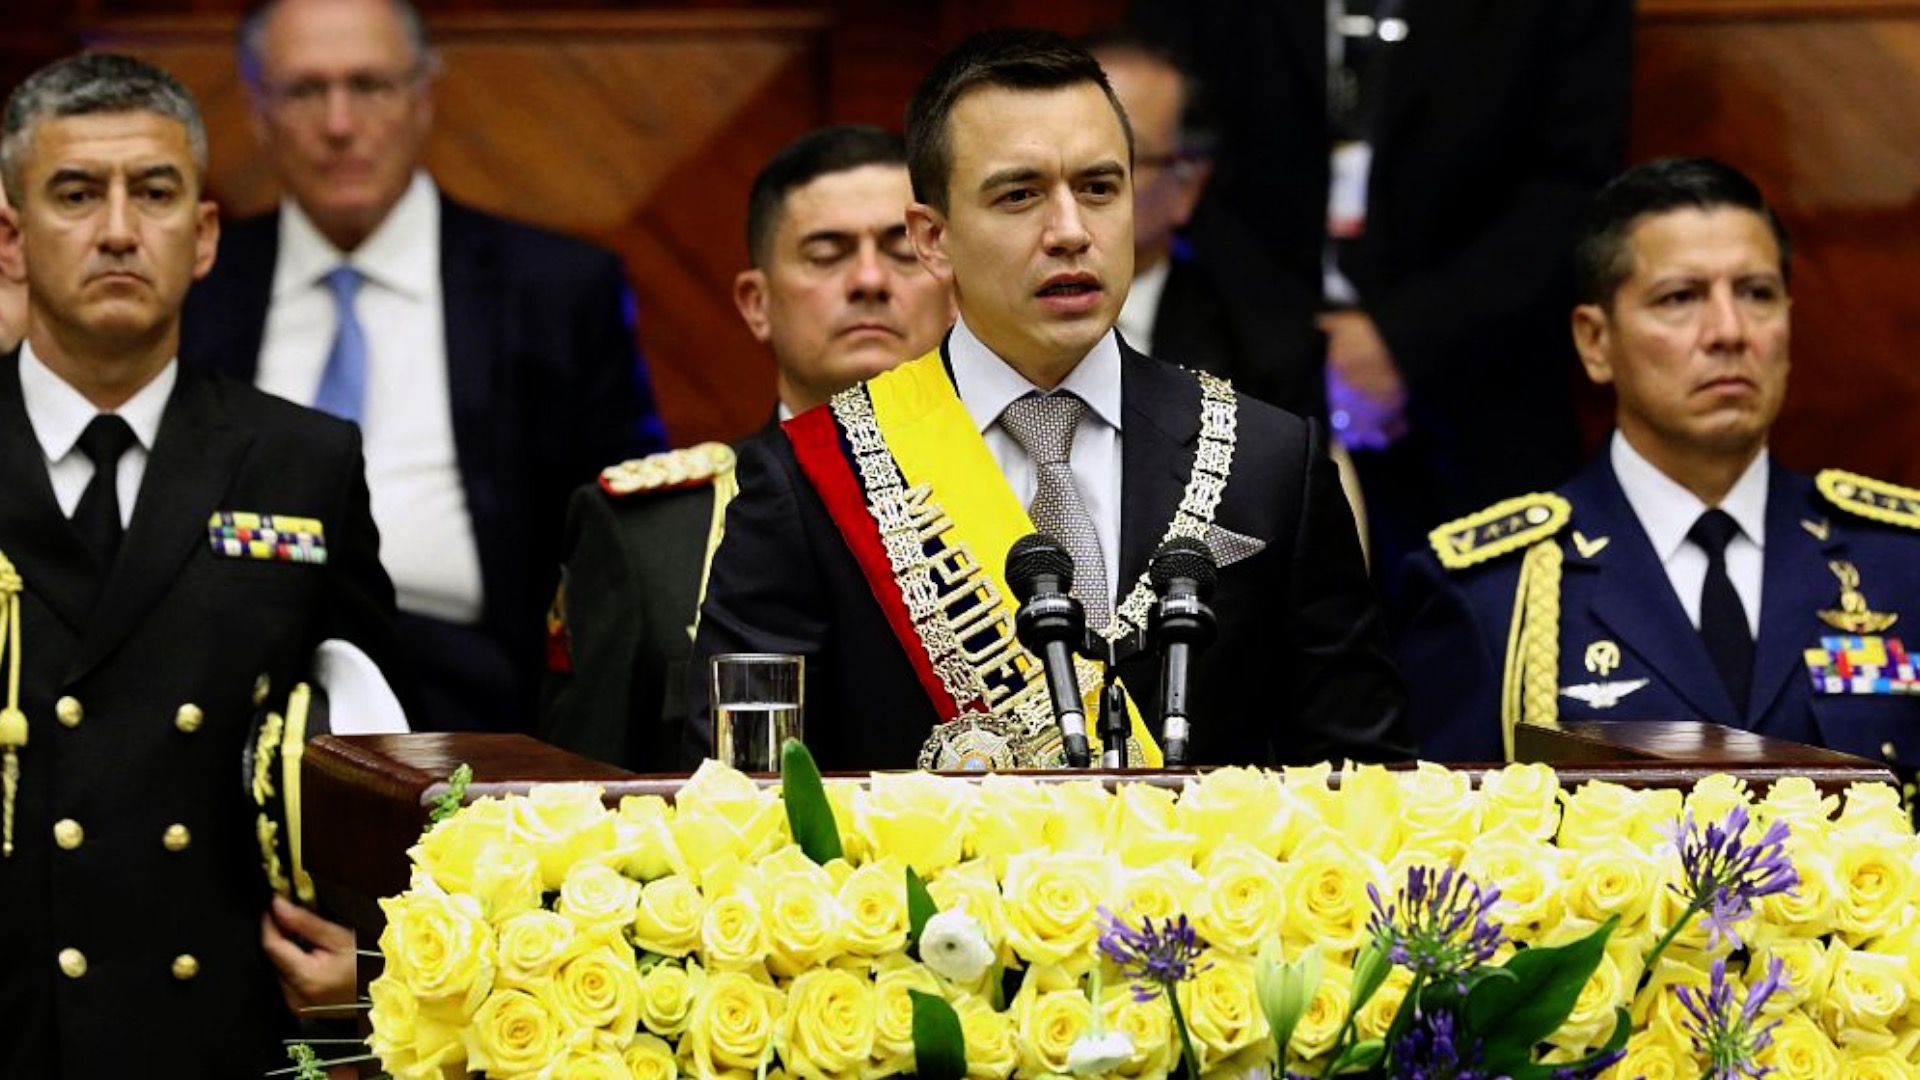 وسط تناحر العديد من العصابات .. أصغر رئيس في تاريخ الأكوادور يعد بالتغيير